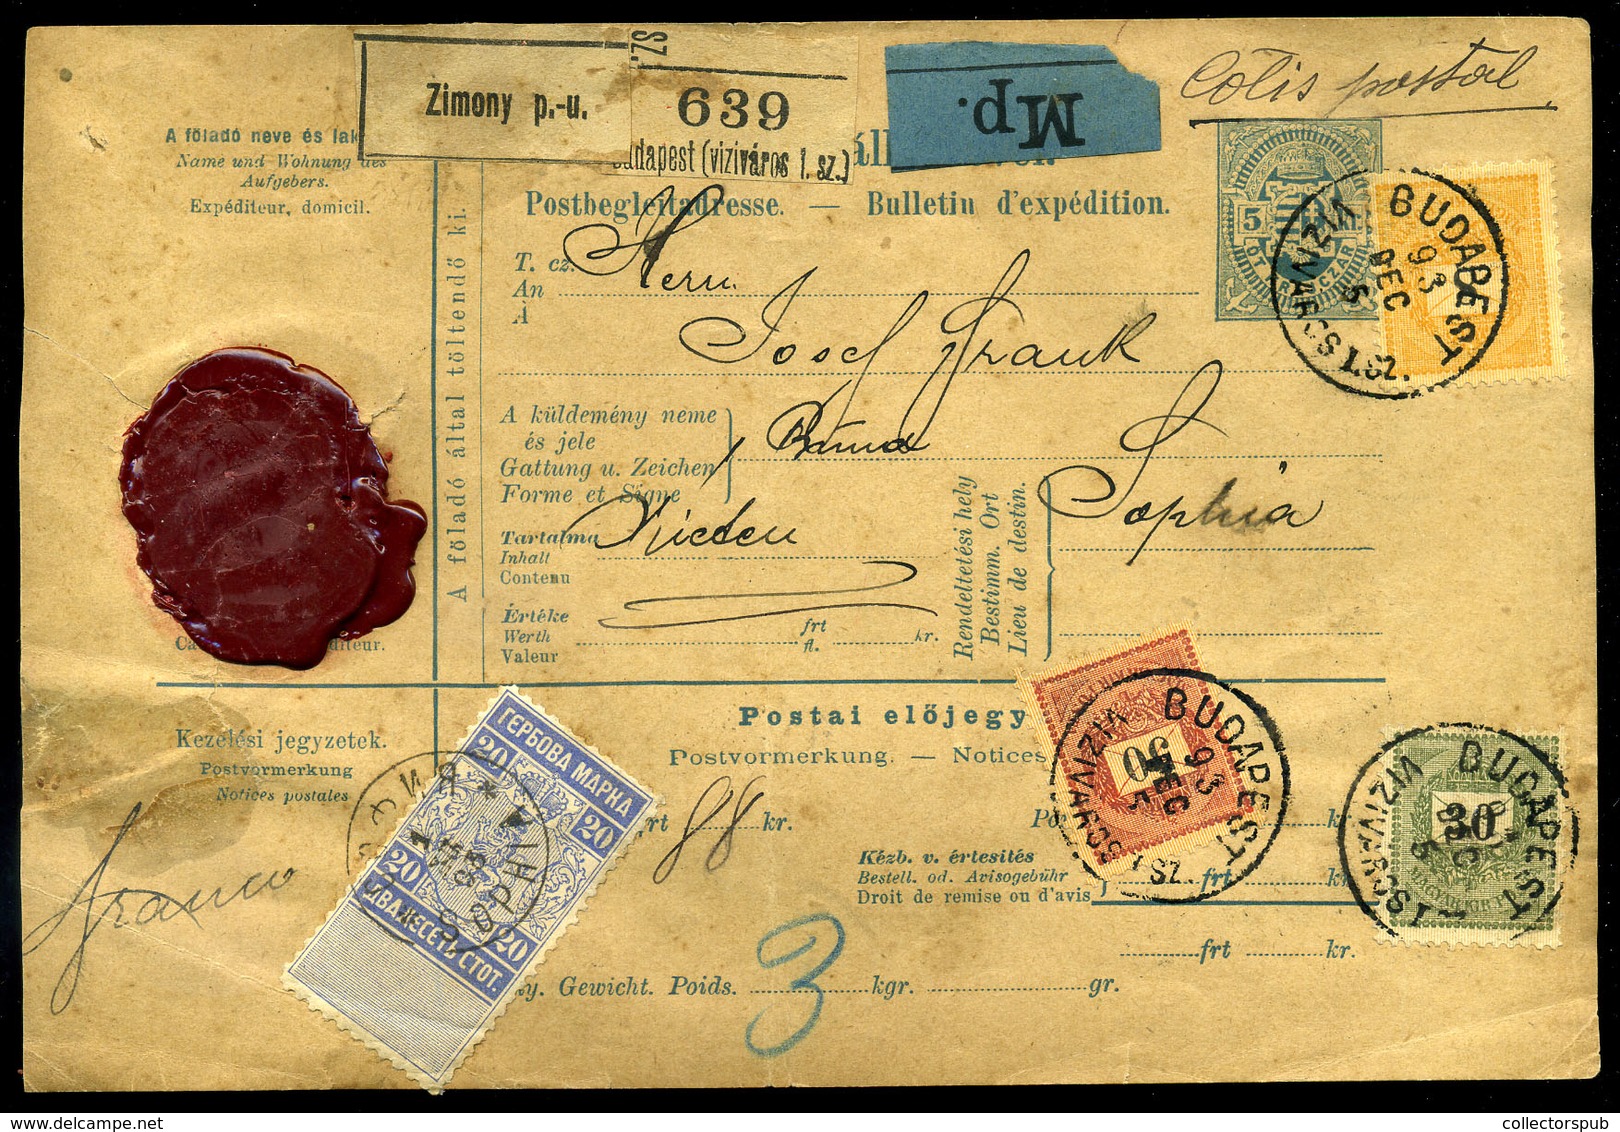 BUDAPEST 1893 Csomagszállító 50+30+8 Kr Bérmentesítéssel Bulgáriába - Used Stamps